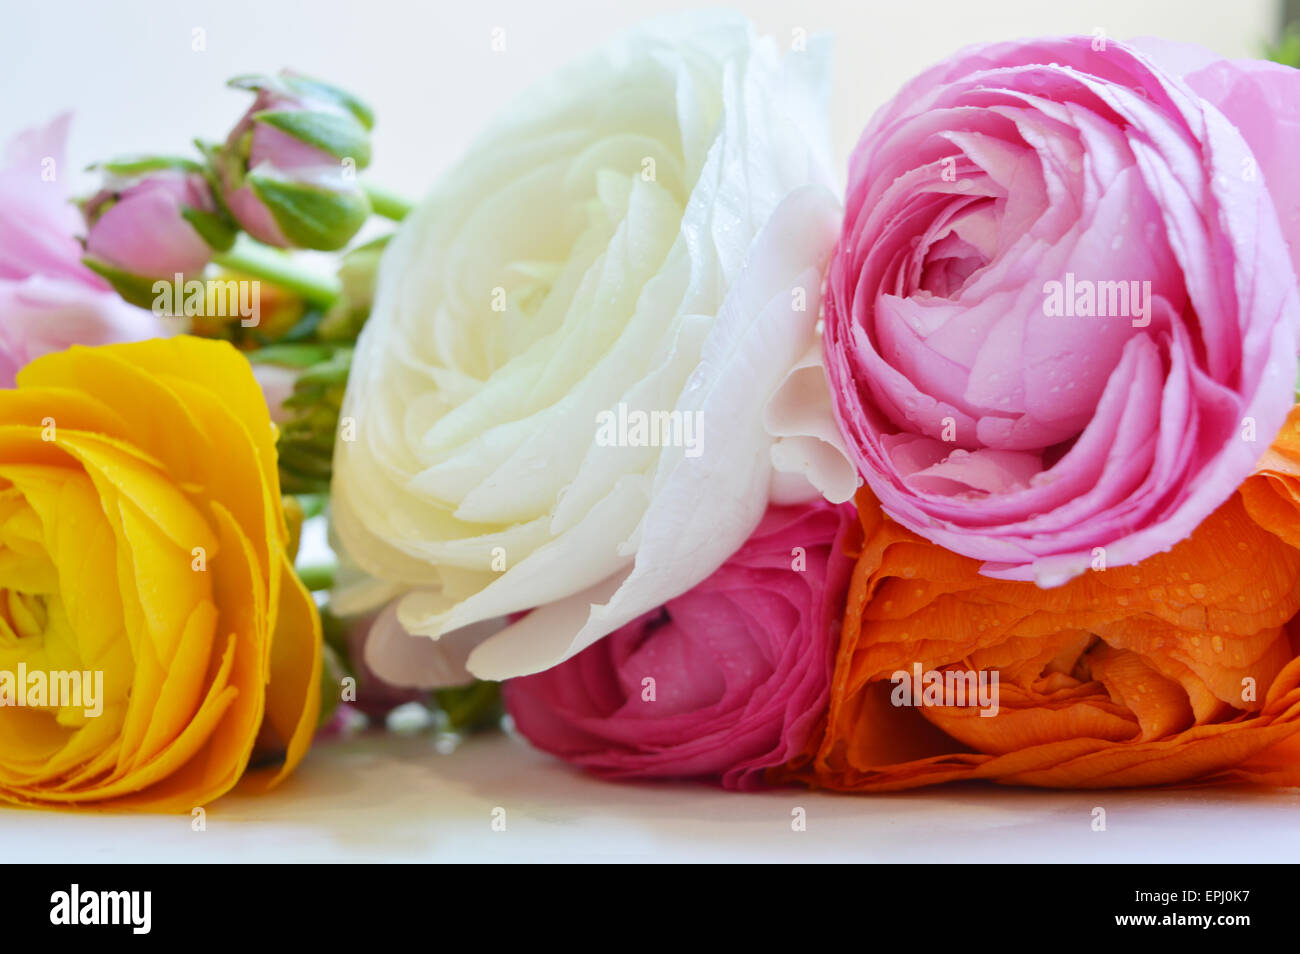 flowers Stock Photo